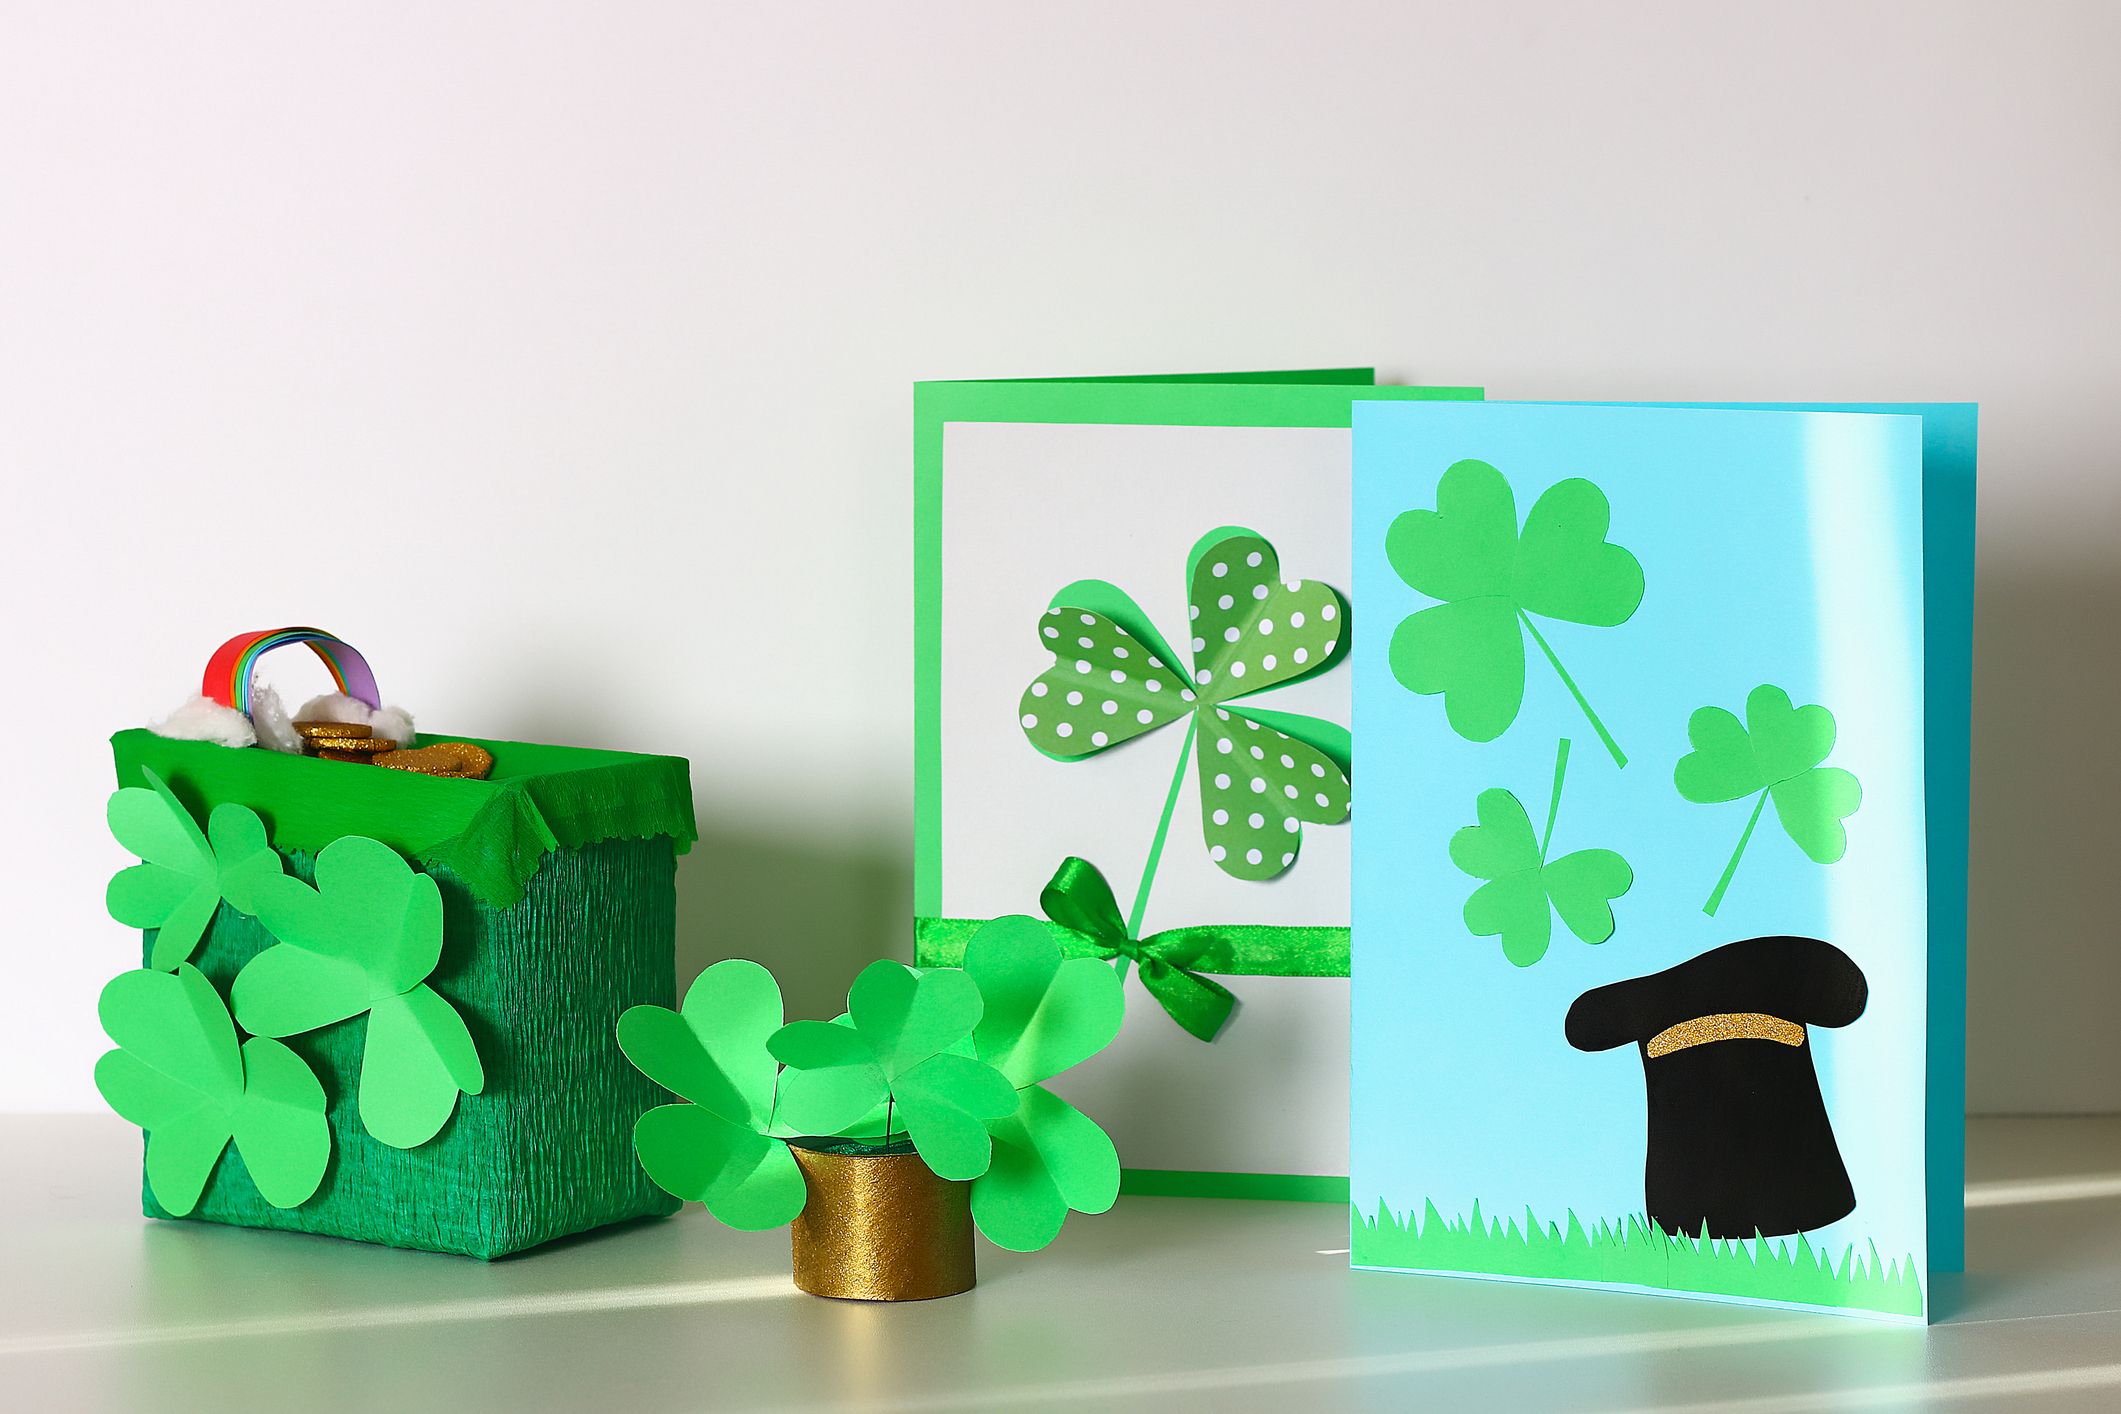 50 Easy St. Patrick's Day Crafts - St. Patrick's Day DIYs 2023